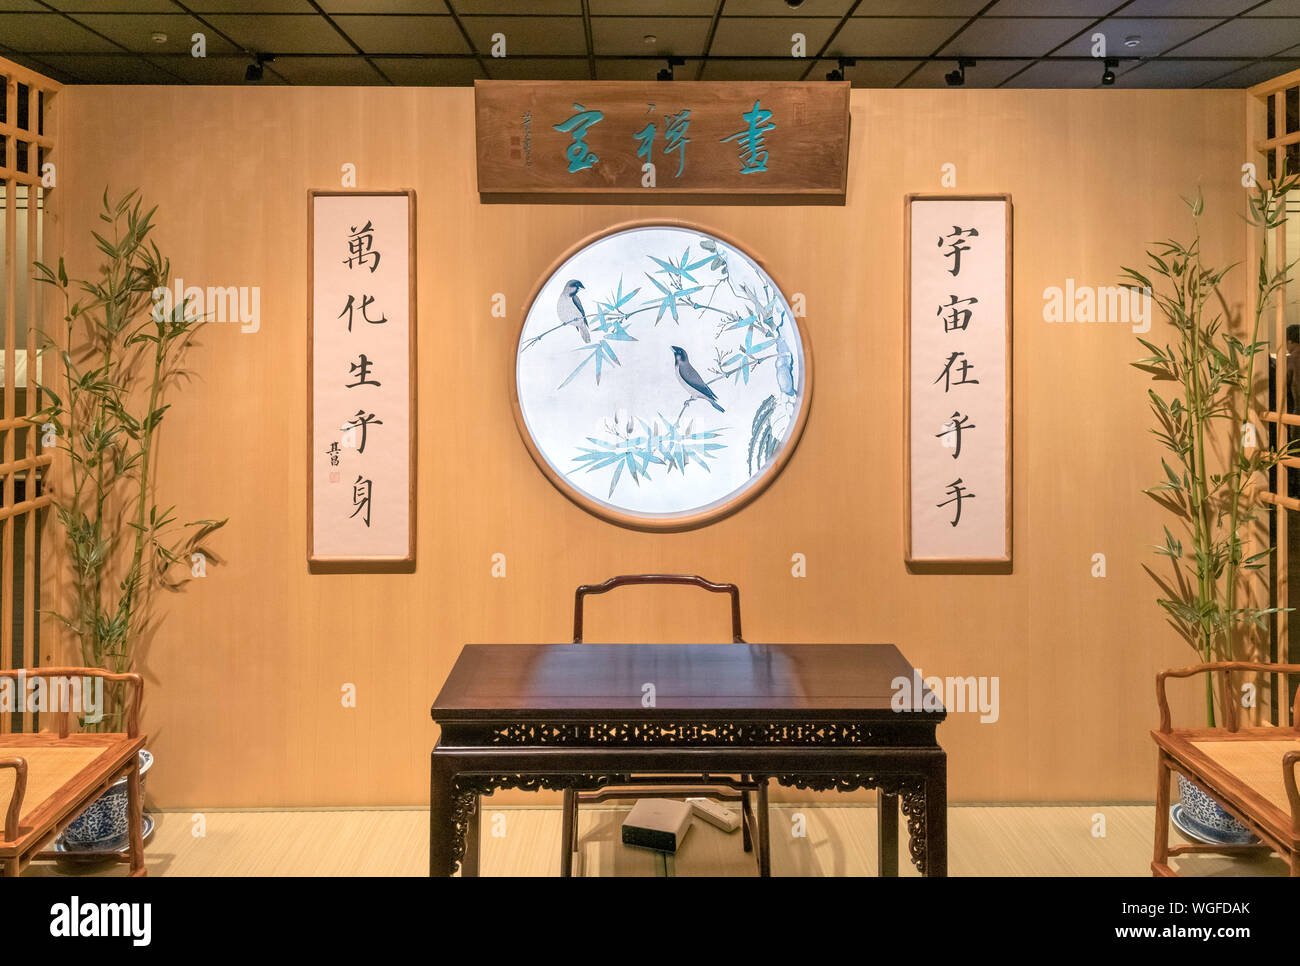 Entrée de la section calligraphie du musée de Shanghai, Pudong New Area, Shanghai, Chine Banque D'Images